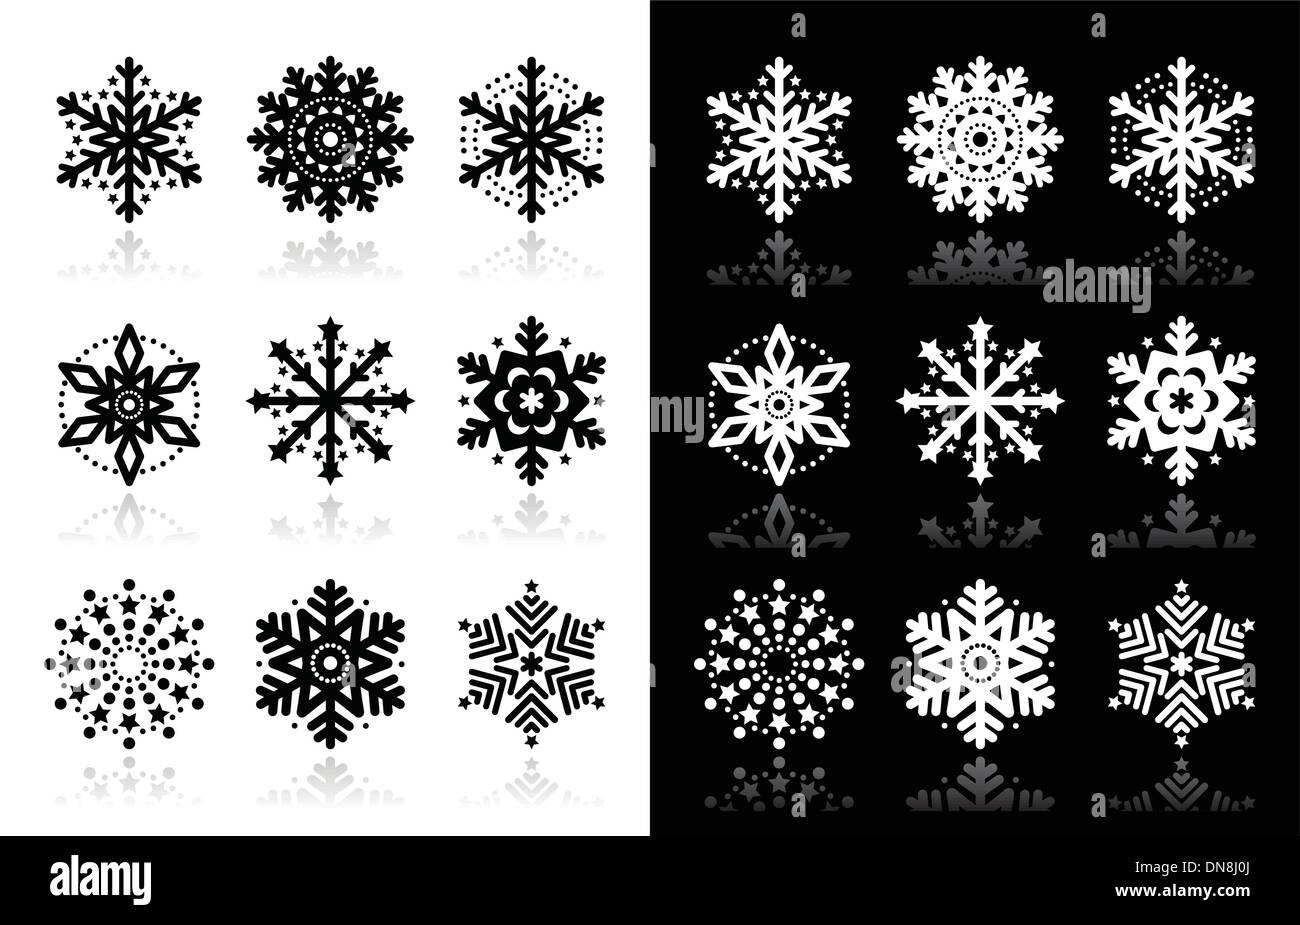 Weihnachten oder Winter Schneeflocken Vektor-Icons Stock Vektor